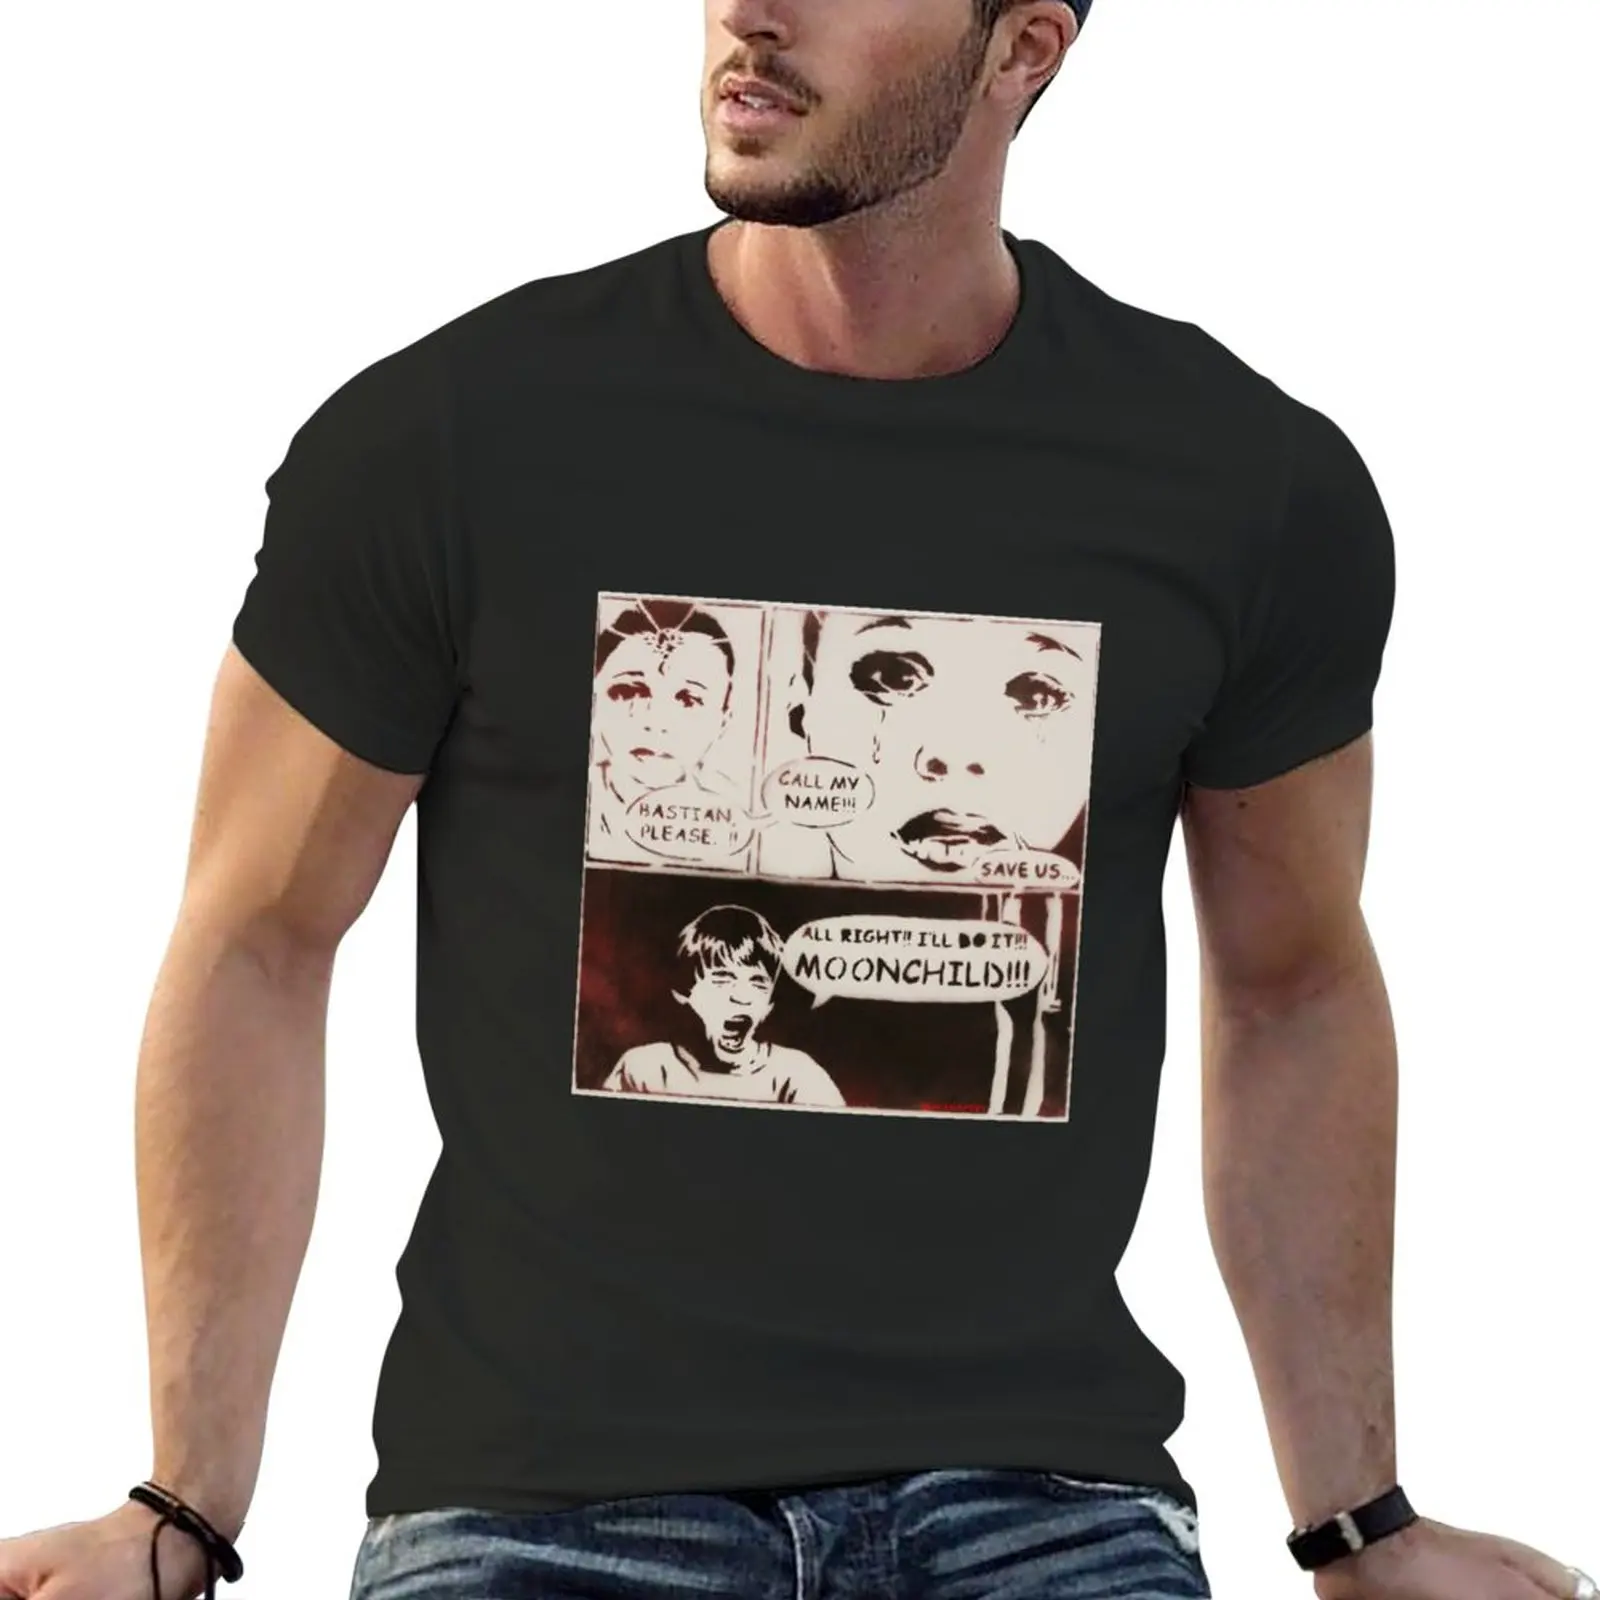 Футболка MrMAHAFFEYS Moonchild в комиксном стиле с надписью неверная история, милые топы, футболки для мальчиков, Забавные футболки для мужчин